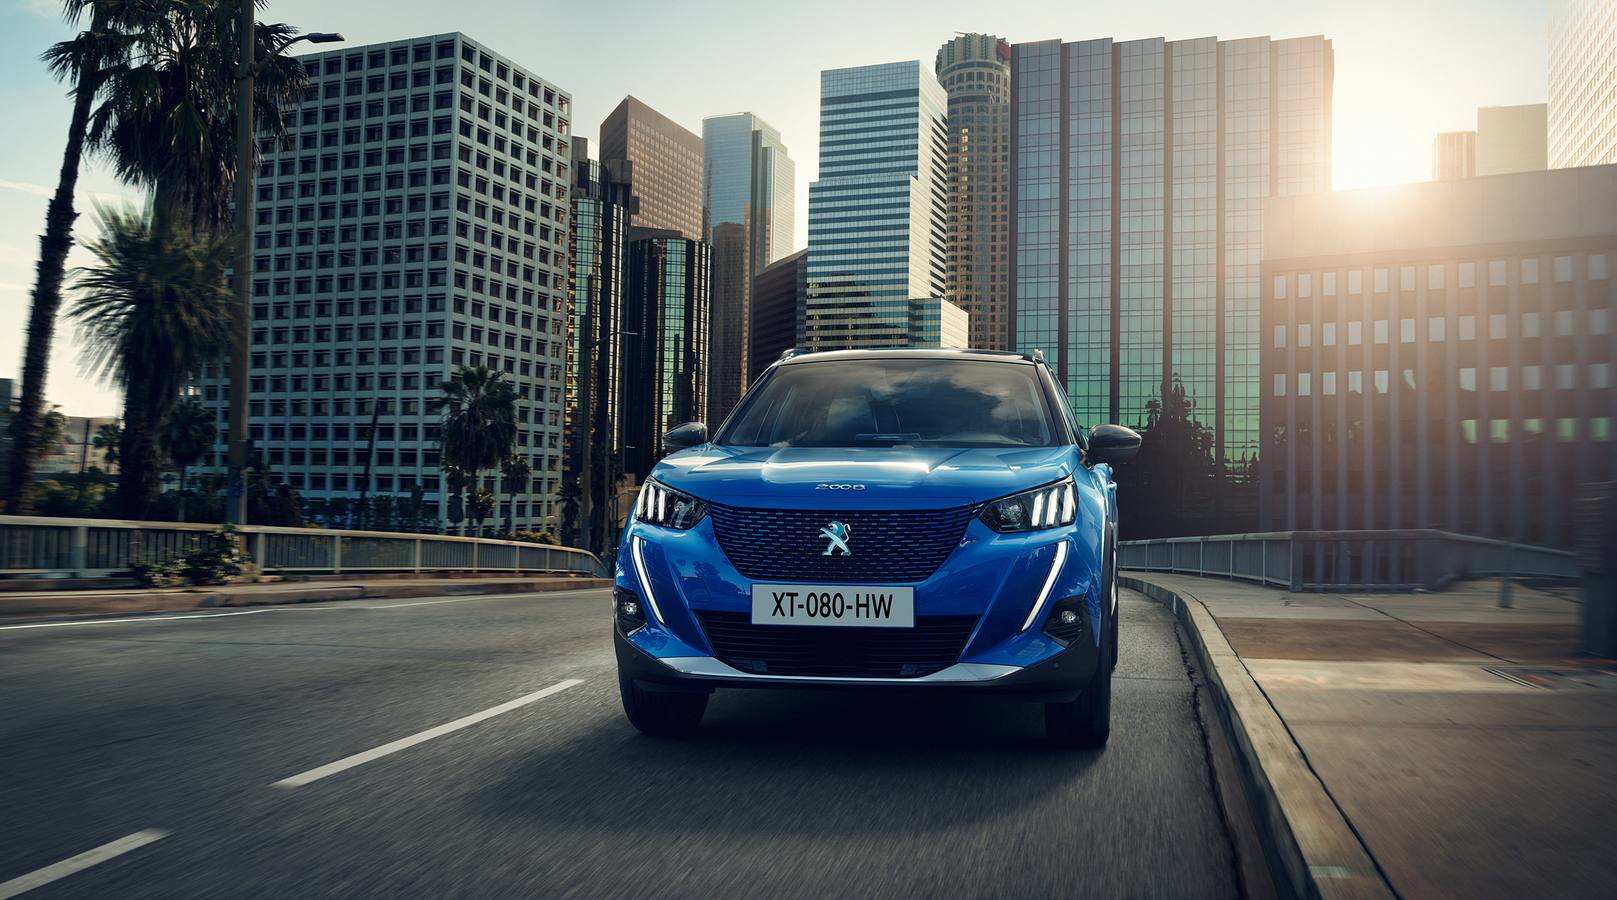 El nuevo Peugeot 2008 se fabricará en Vigo. Además de las habituales mecánicas en gasolina y diésel, también se ofrecerá una variante eléctrica. Llega a finales de año.